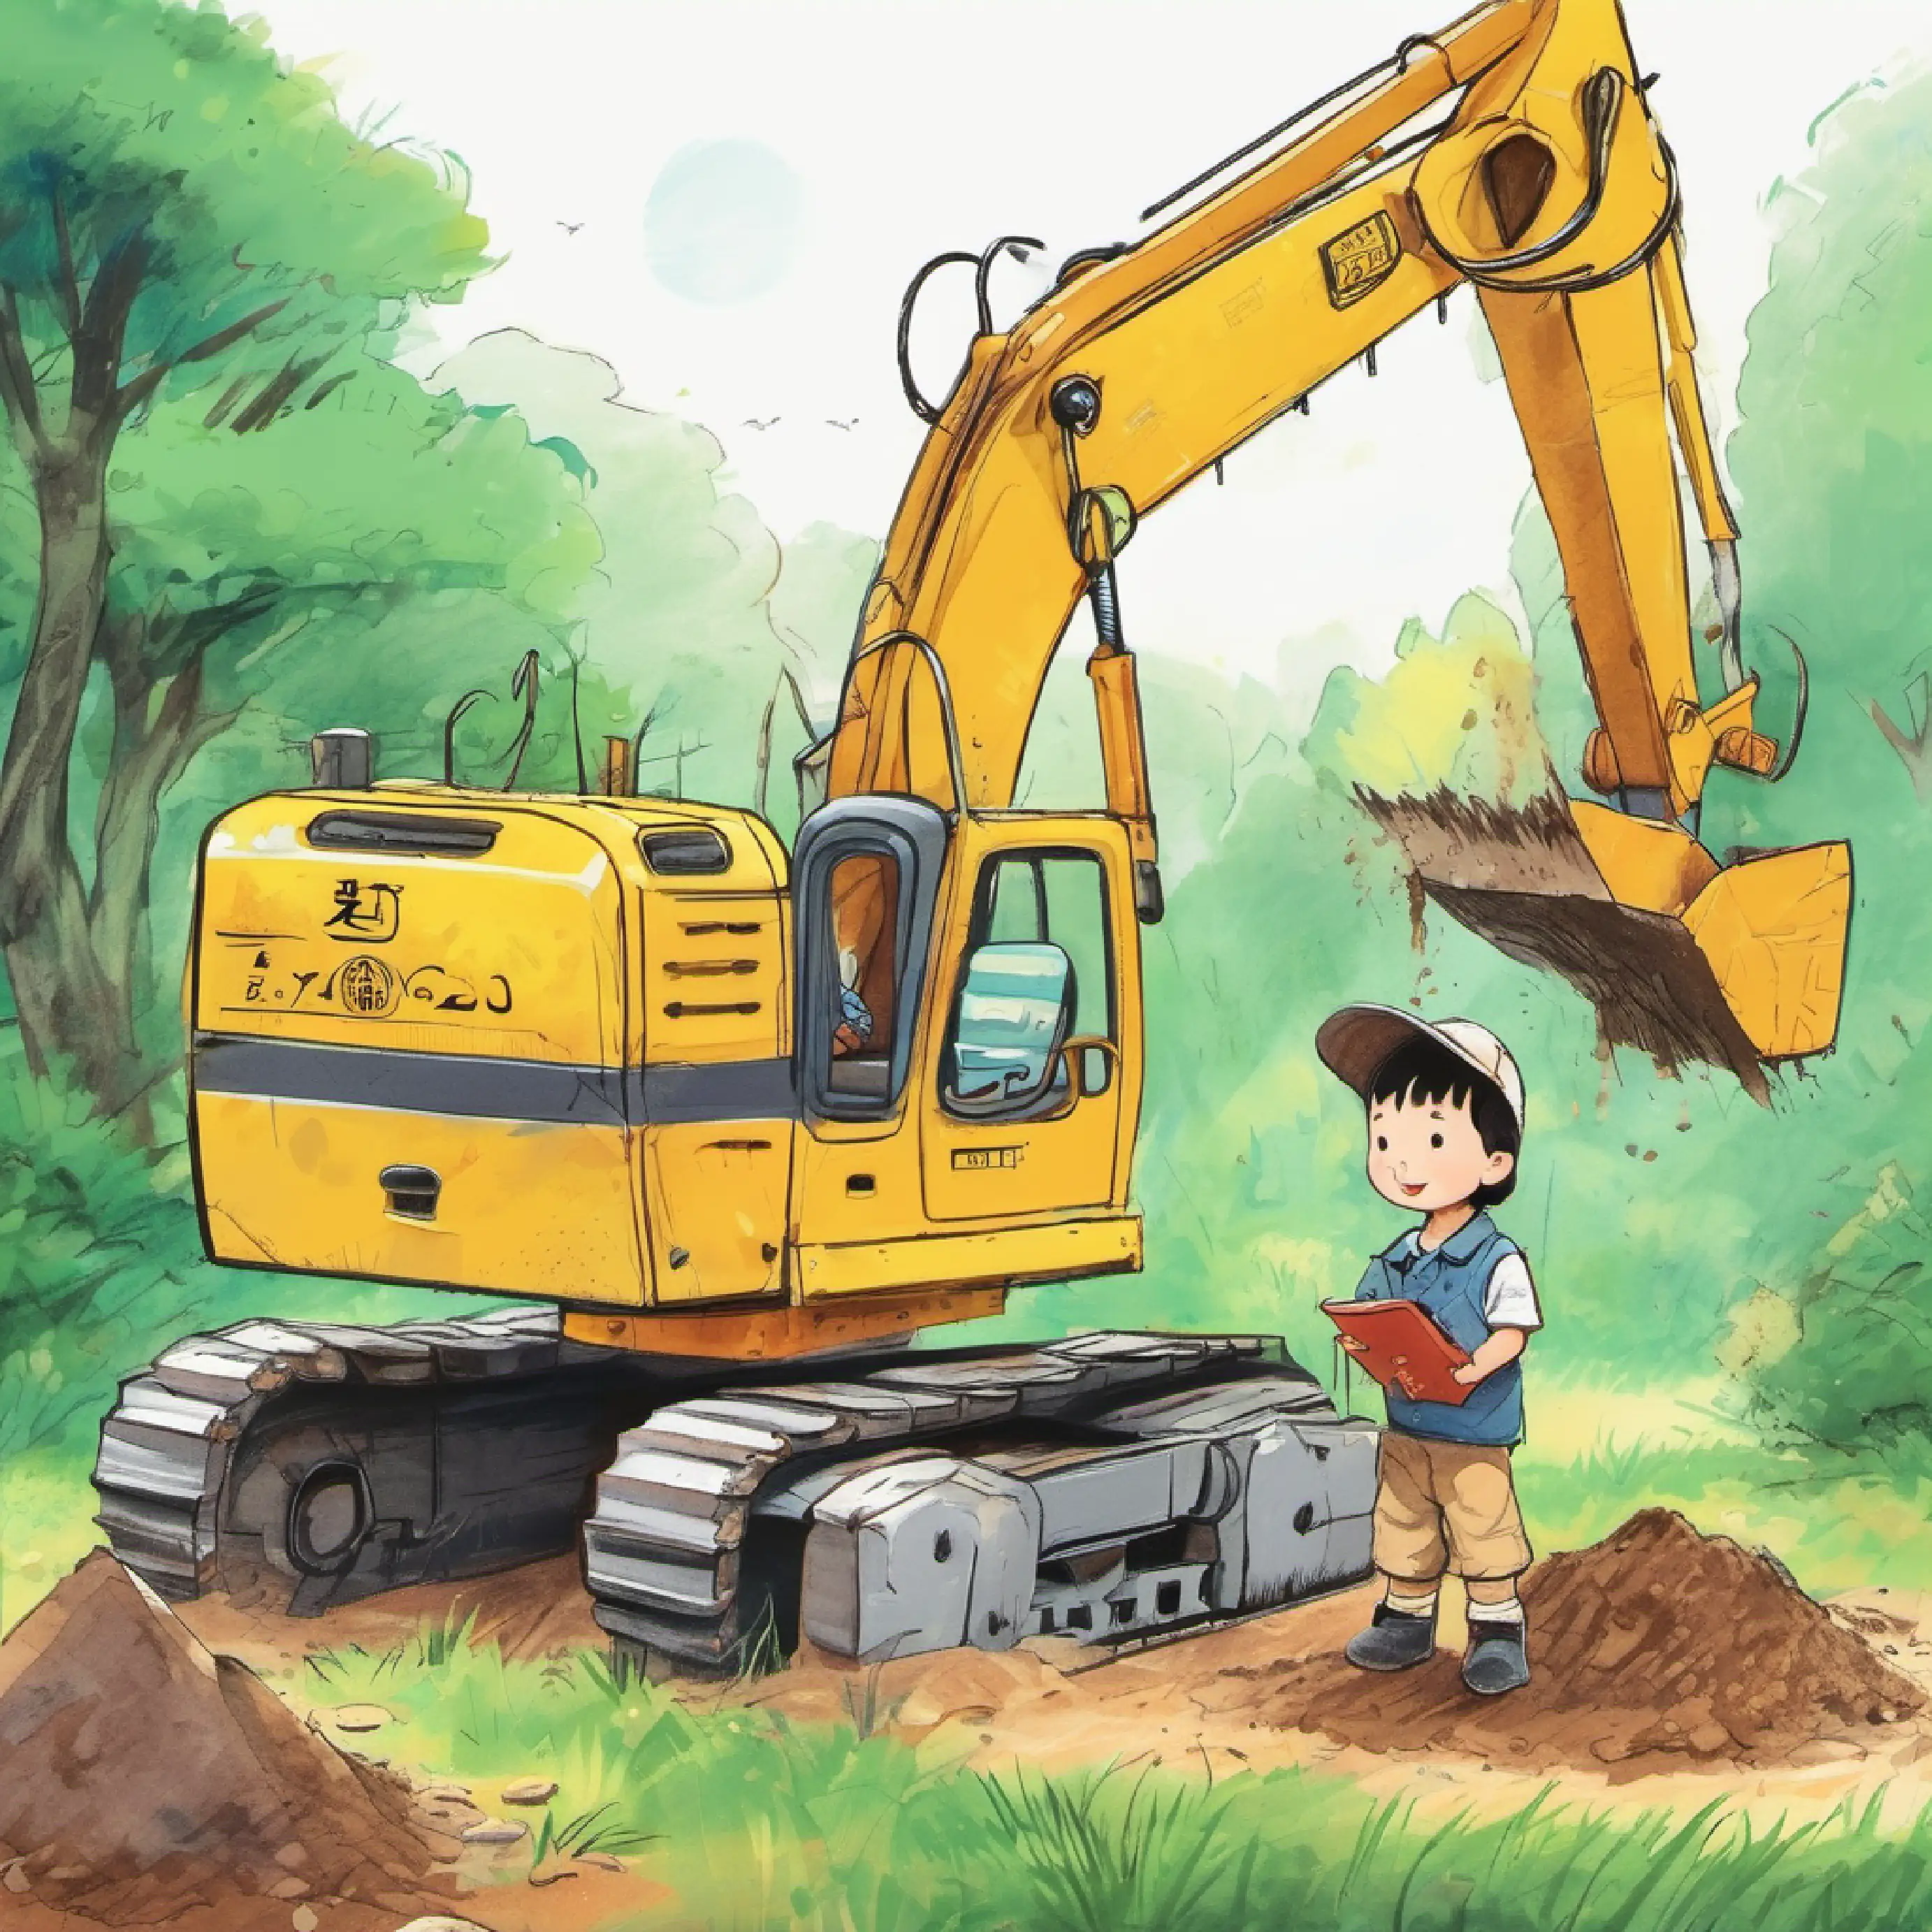 Xiao Zhu Zhu enjoying his day with the excavator.